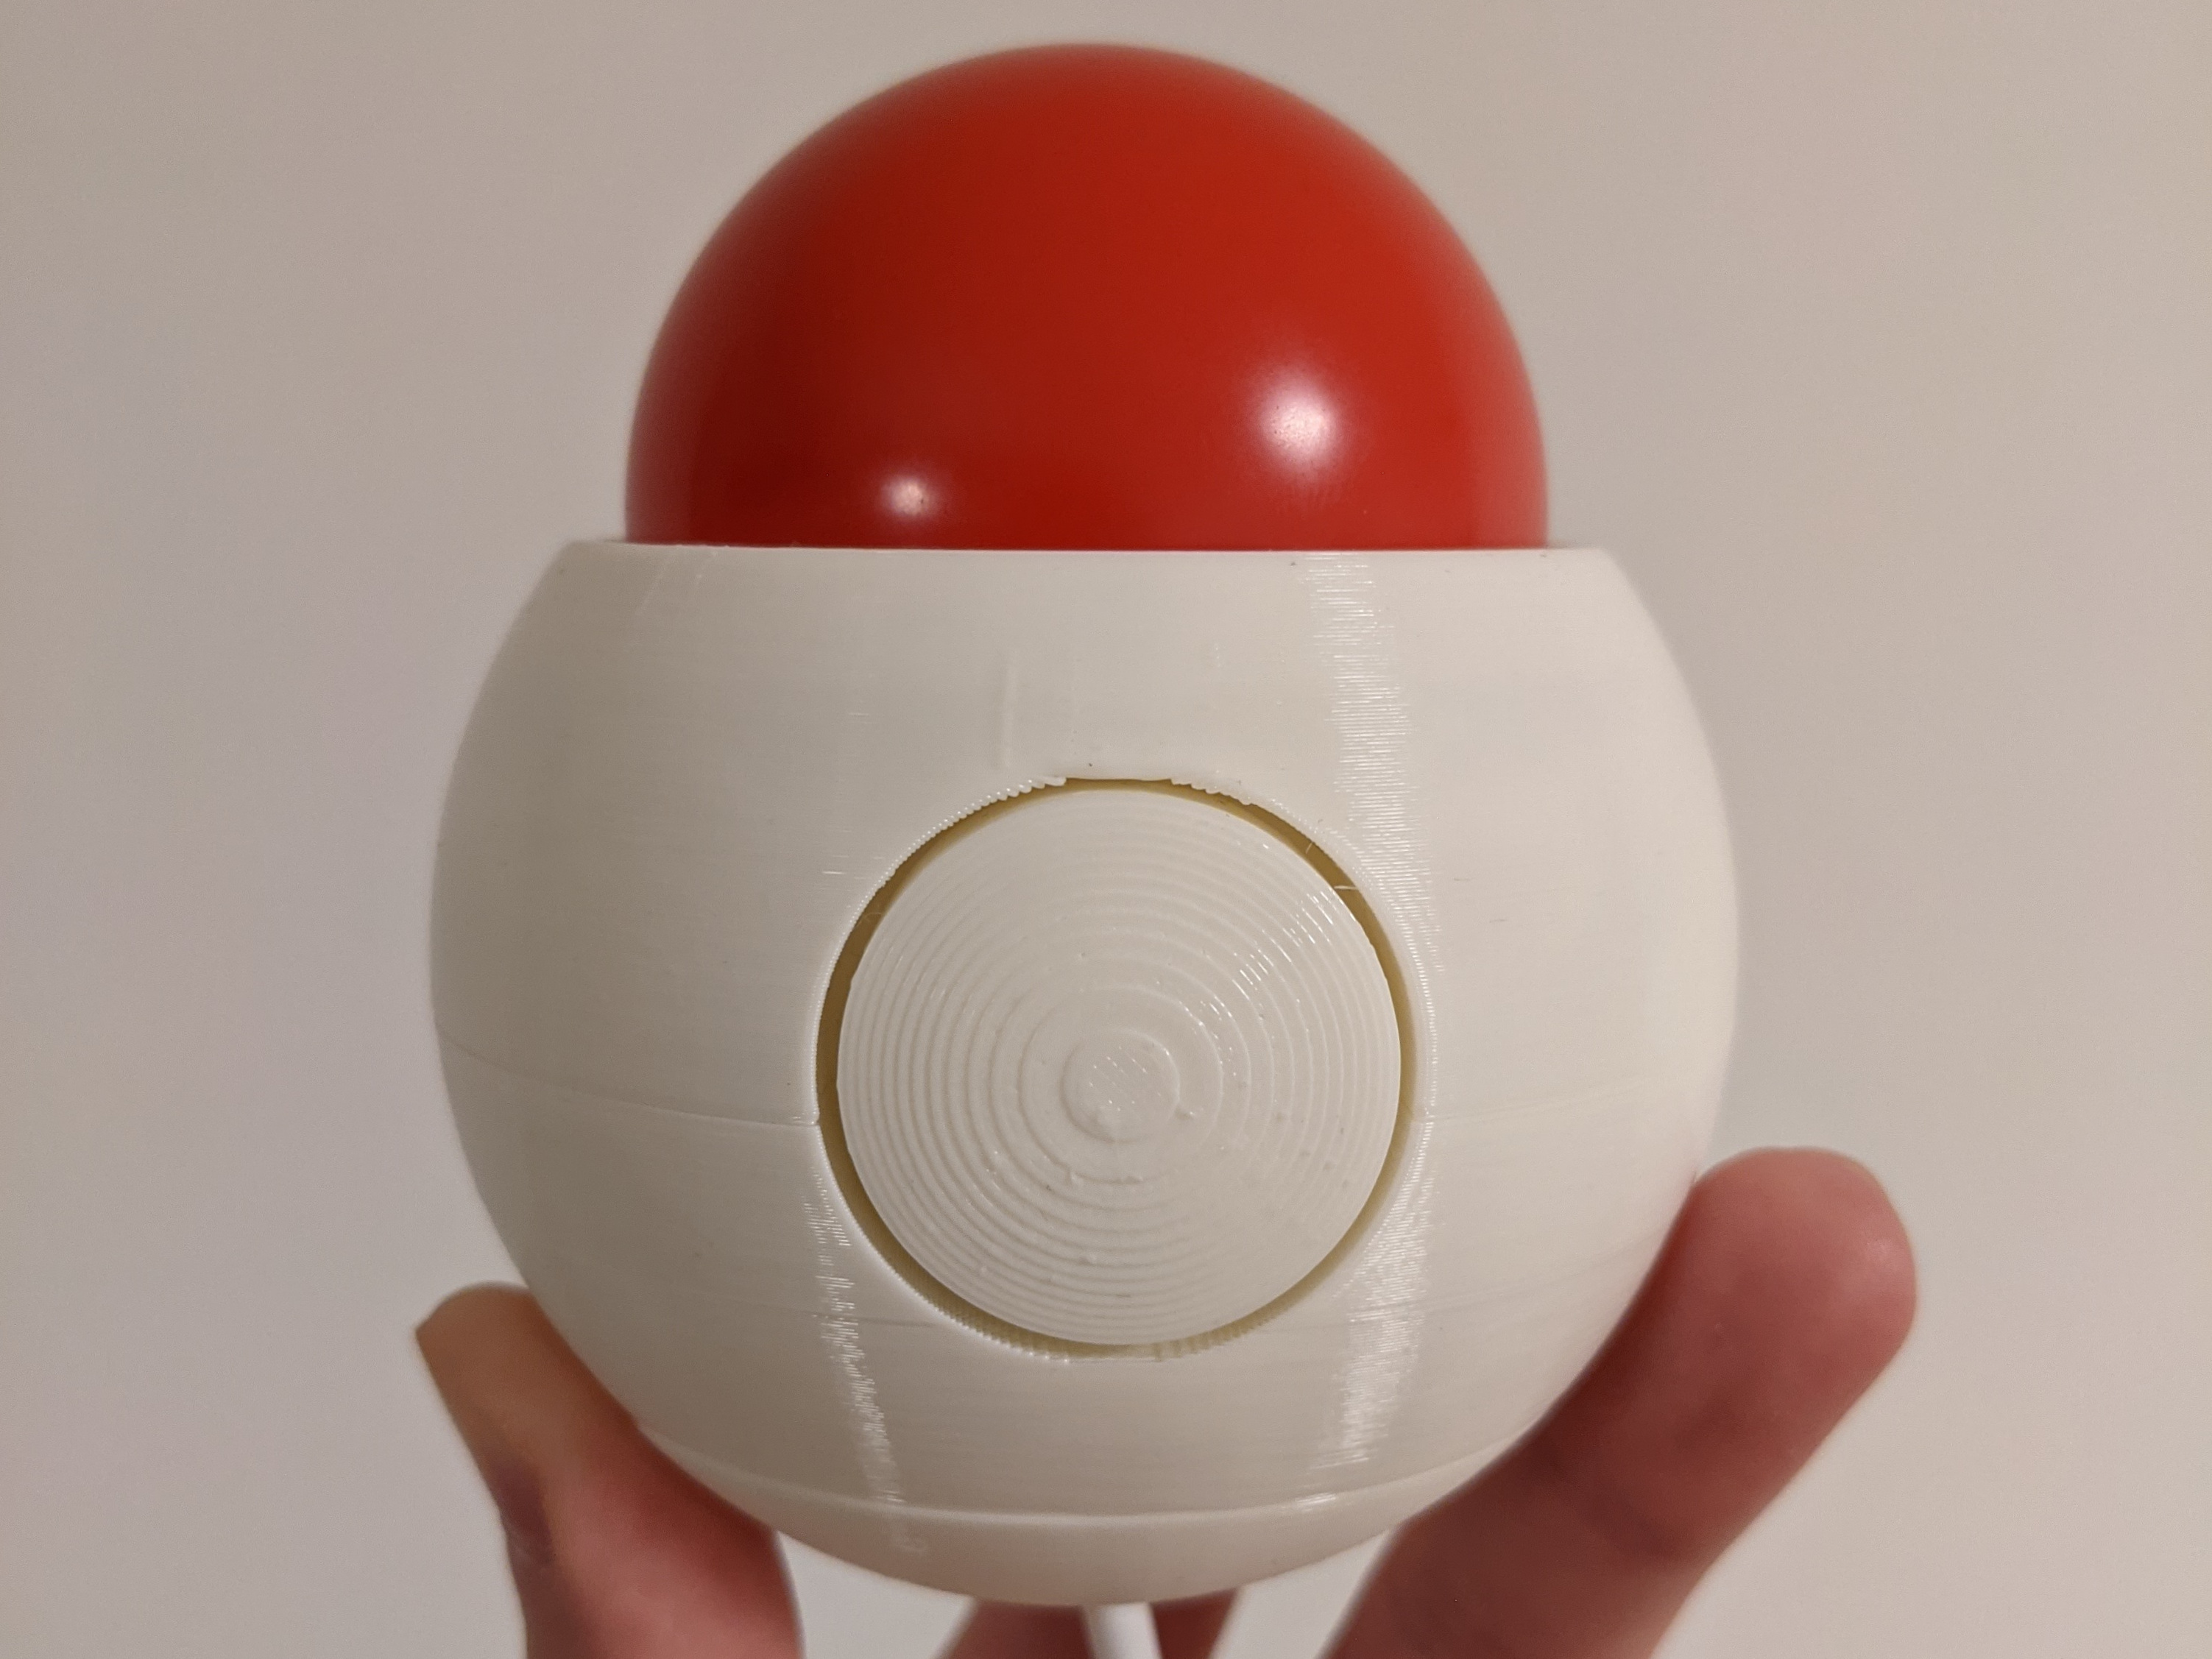 Spherical trackball